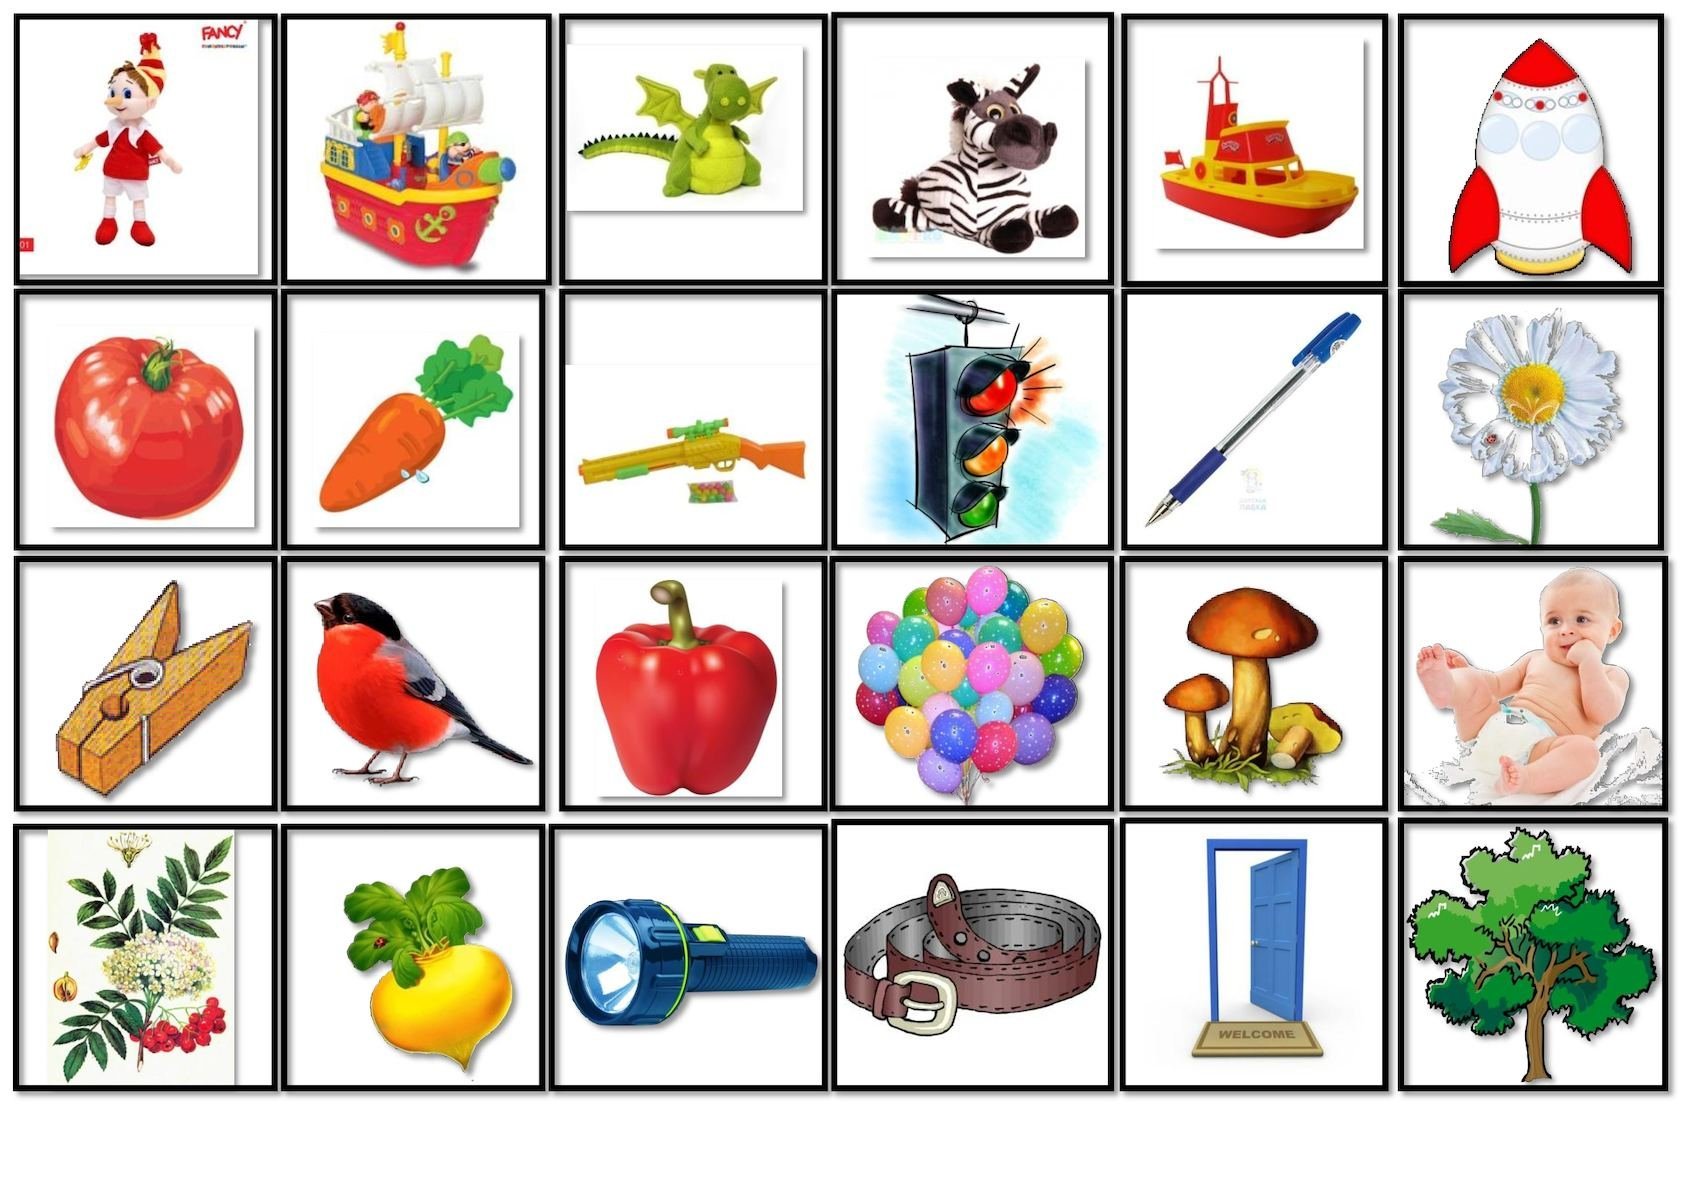 Карточки с изображениями предметов. Карточки с предметами. Карточки "для дошкольников". Карточки с предметами для детей. Набор предметных картинок.